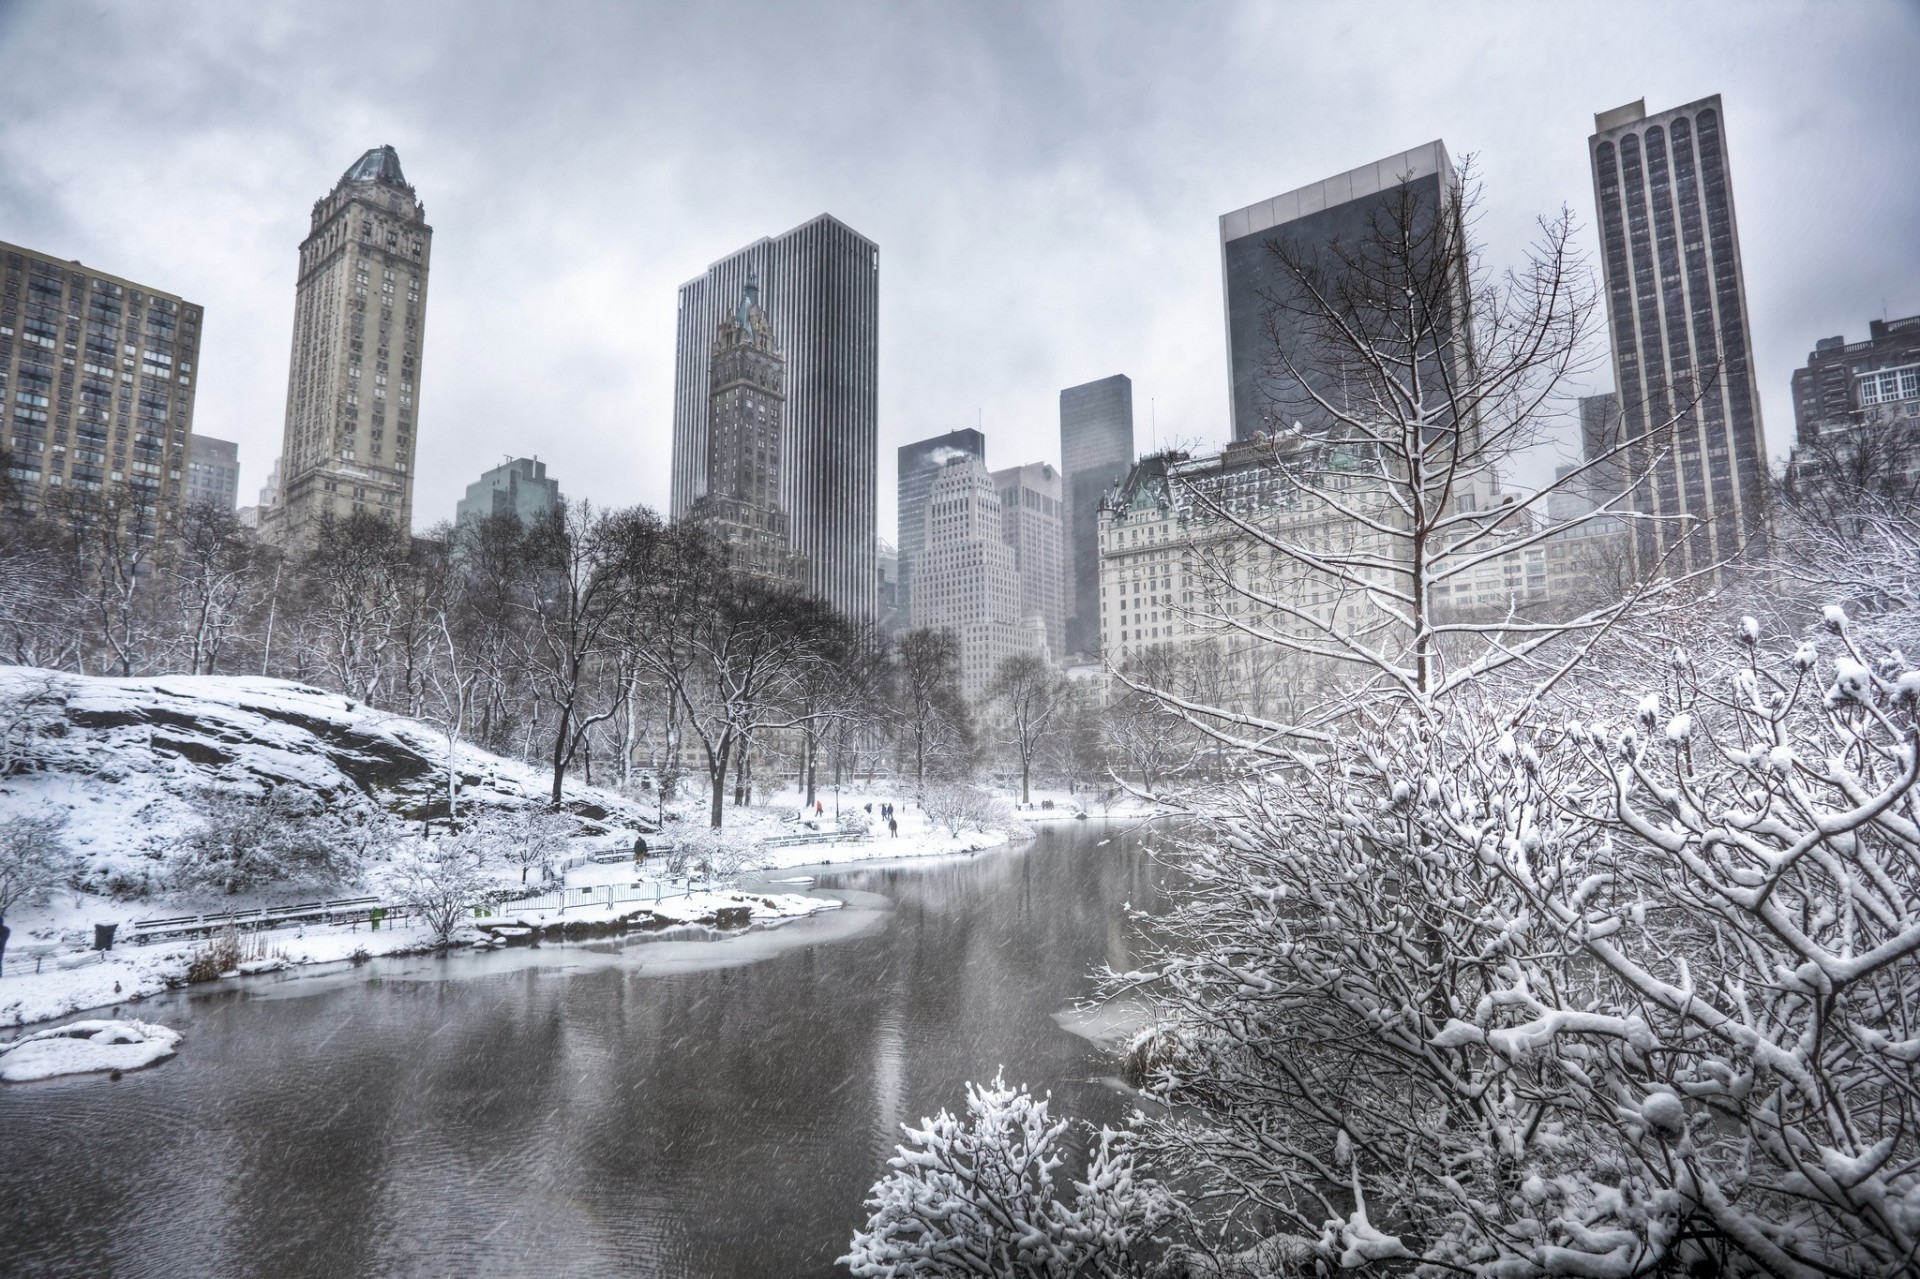 манхэттен нью-йорк зима деревья небоскребы пруд здание центральный парк